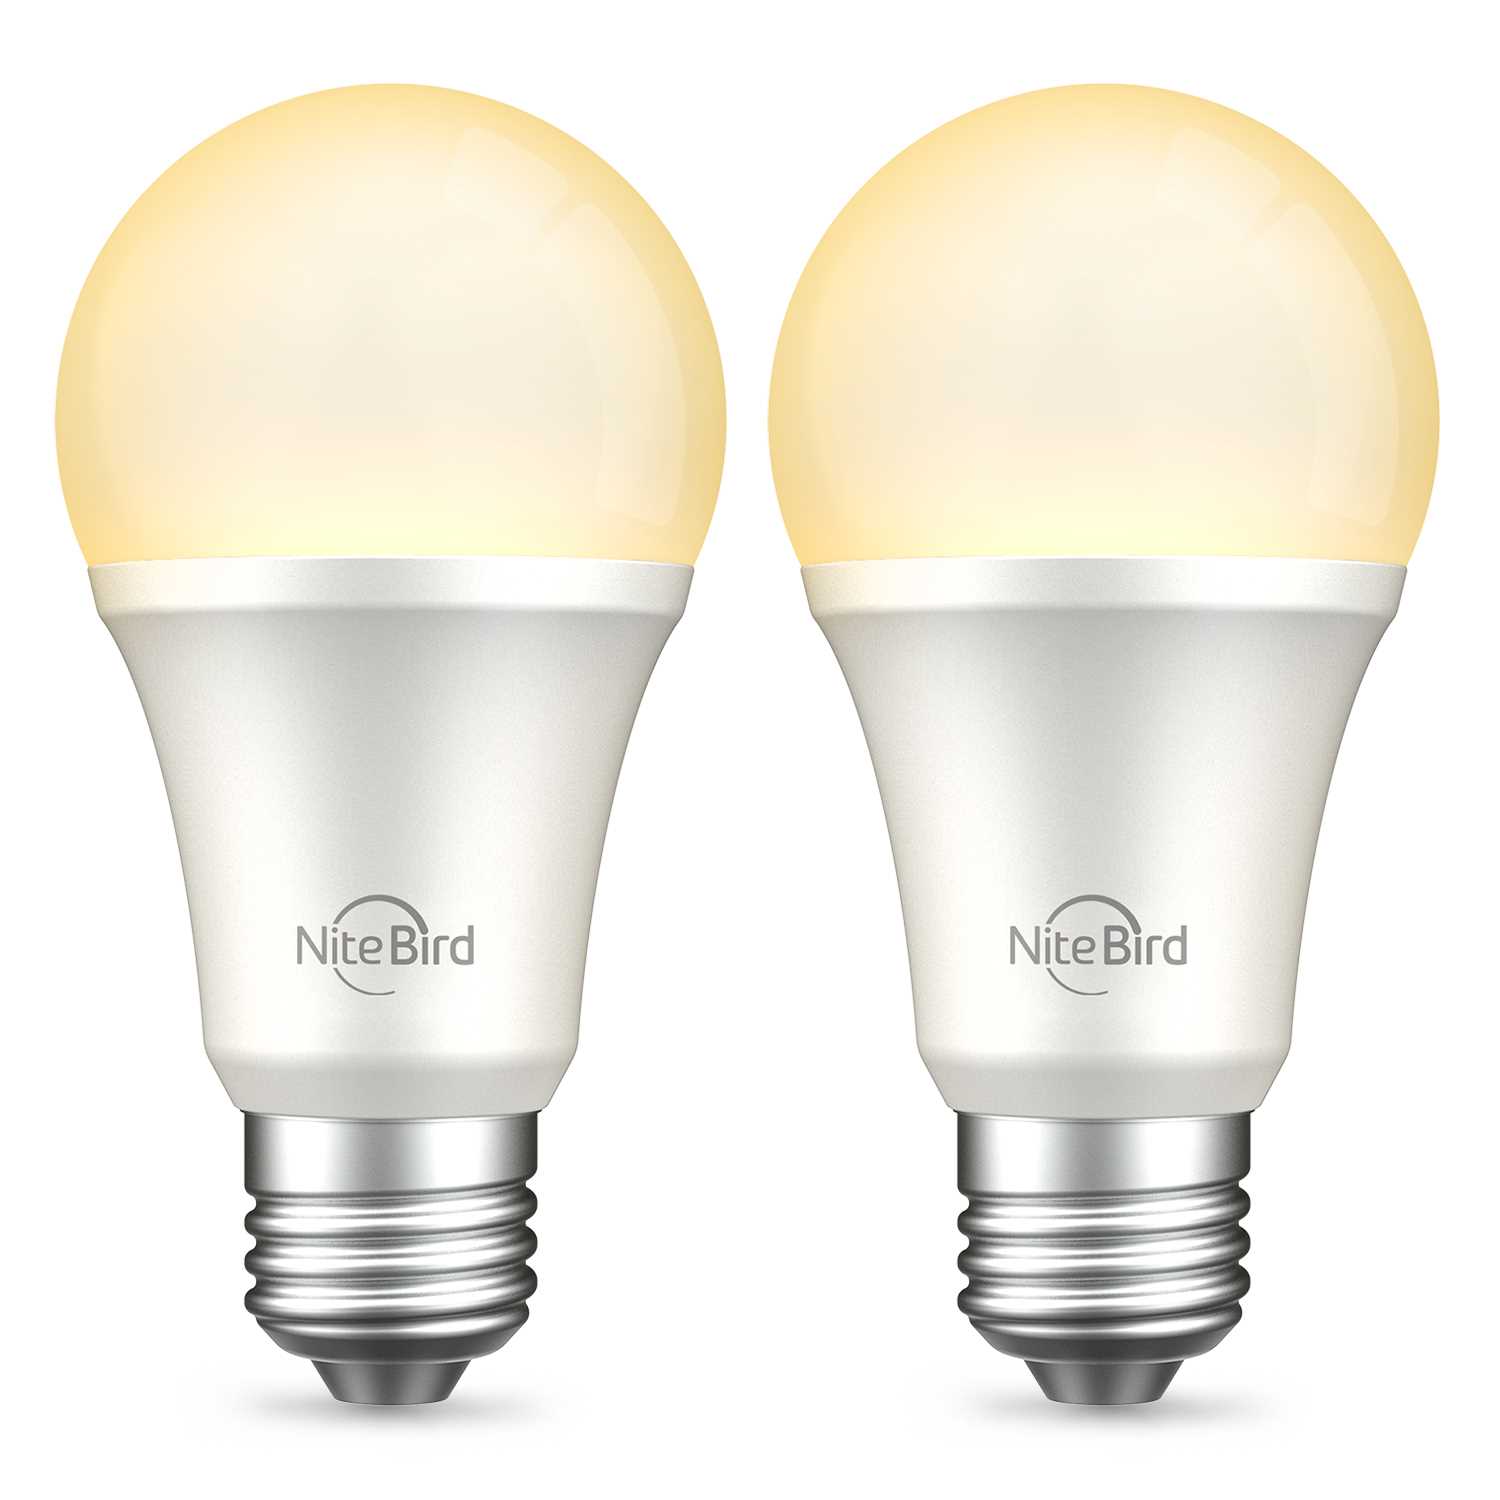 фото Лампа электрическая nitebird умная лампа nitebird smart bulb, цвет мульти